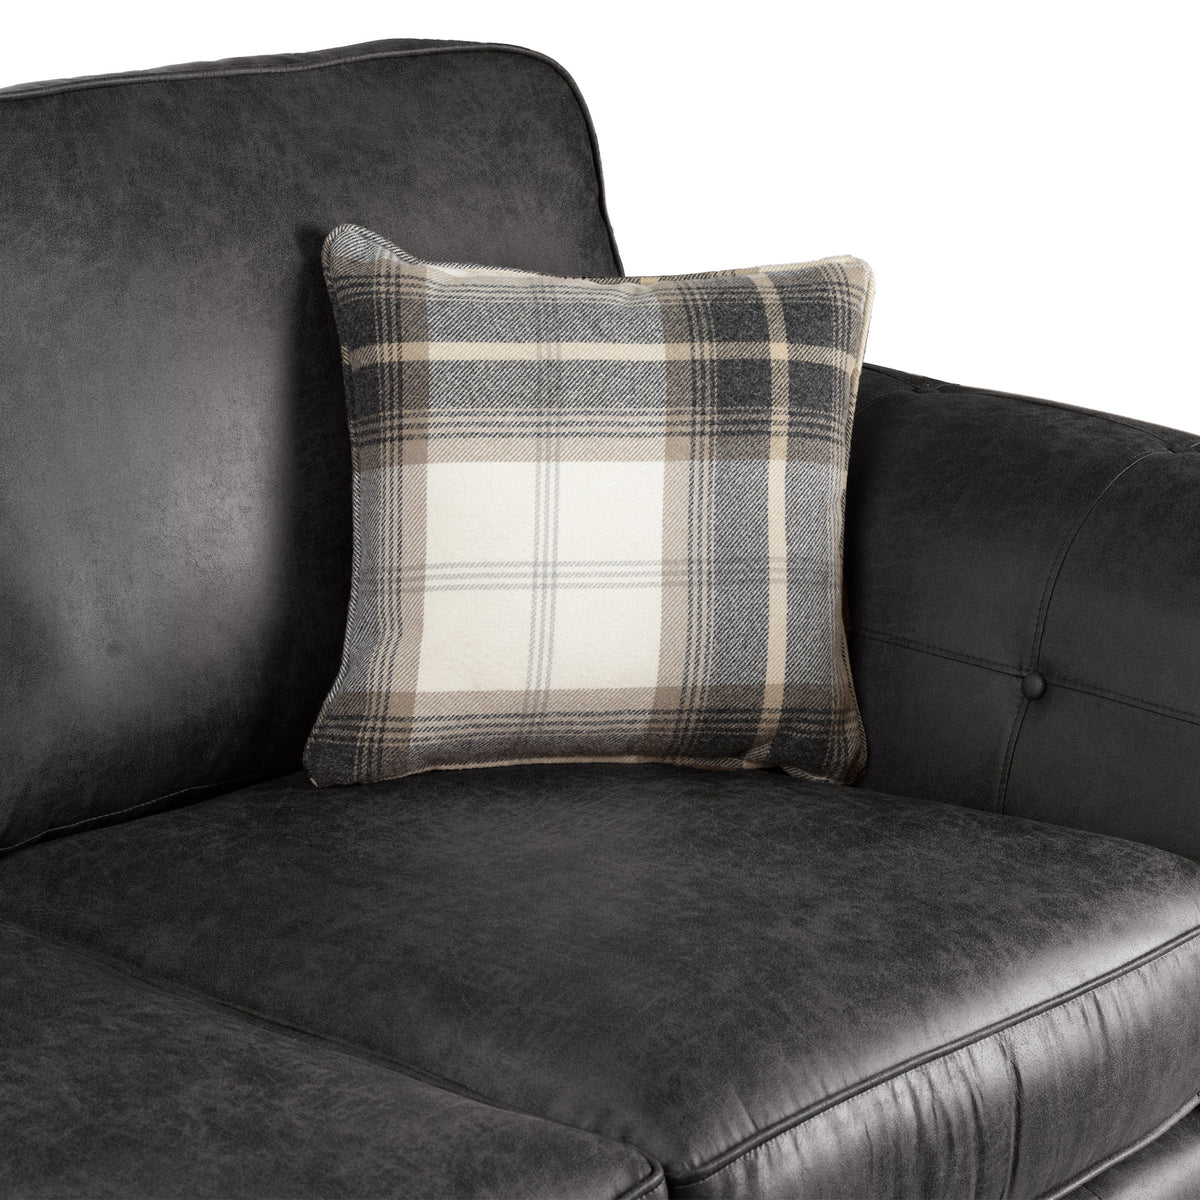 Edward Black Faux Leather 2 Seater Sofa